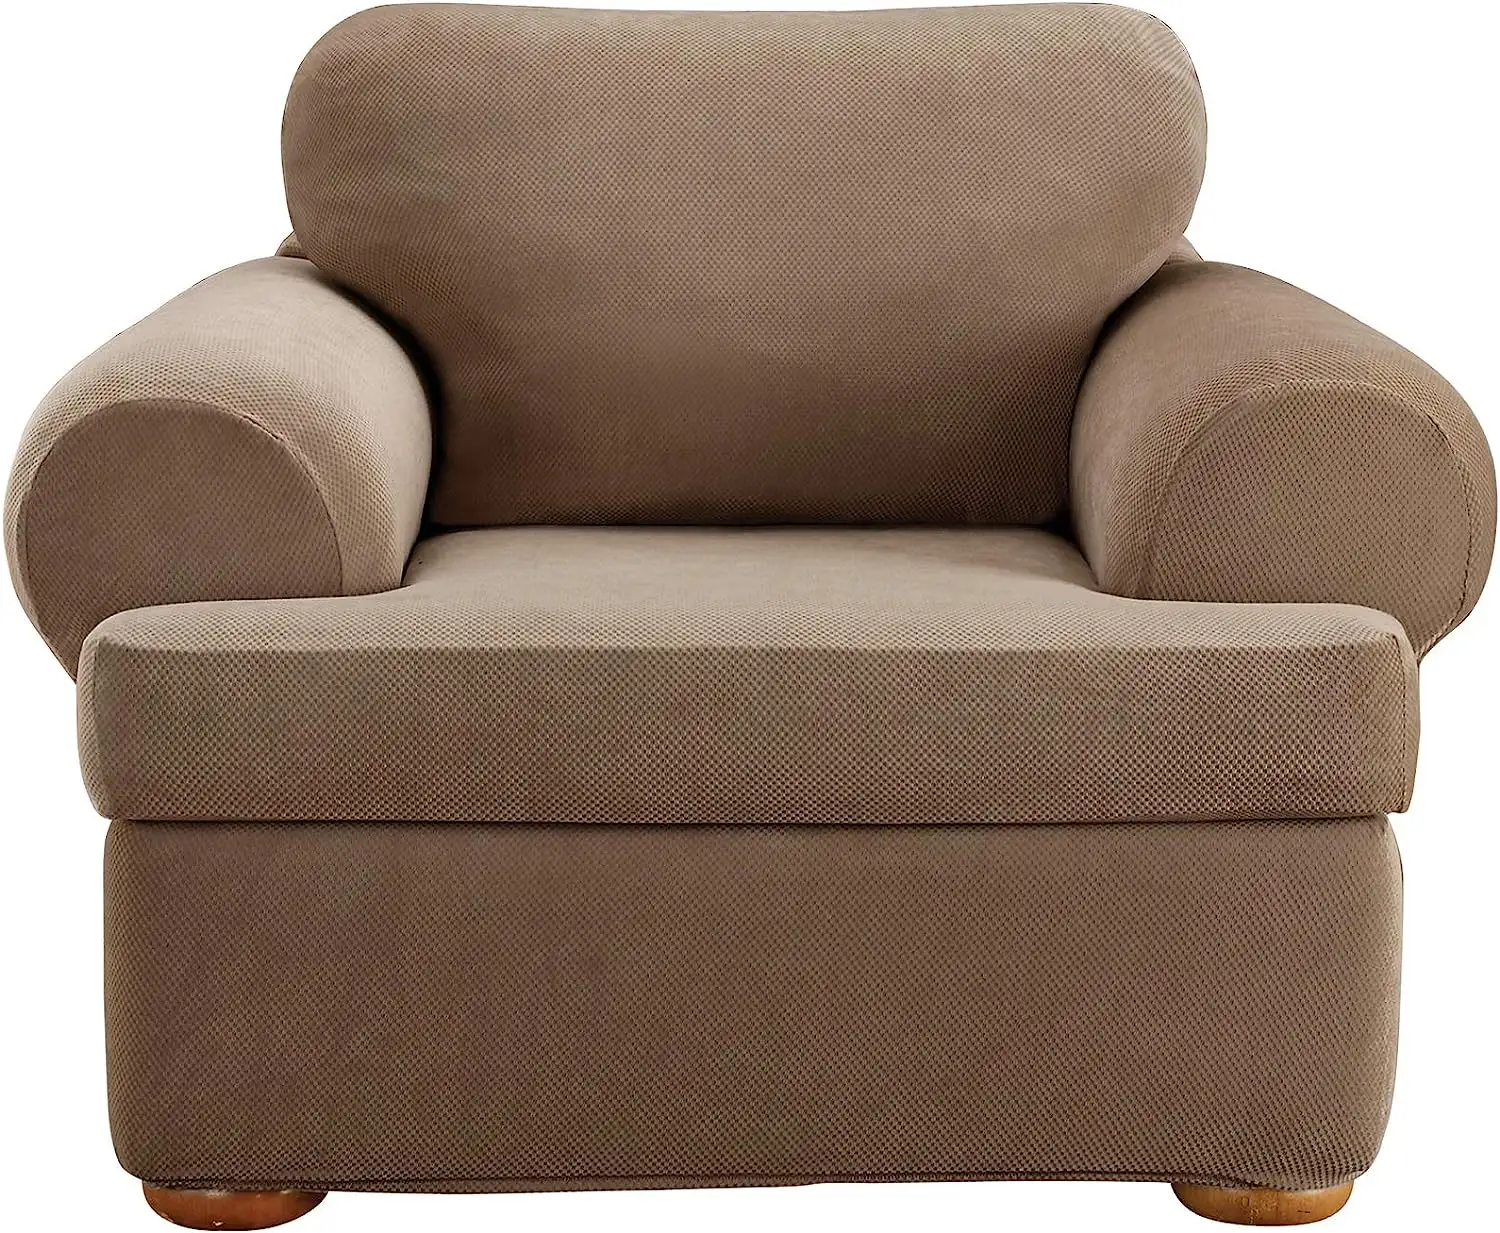 THLCr - 0062 American Custom T-Almofada Cadeira Três Peças Slipcover Stretch Form Fit para sala de estar